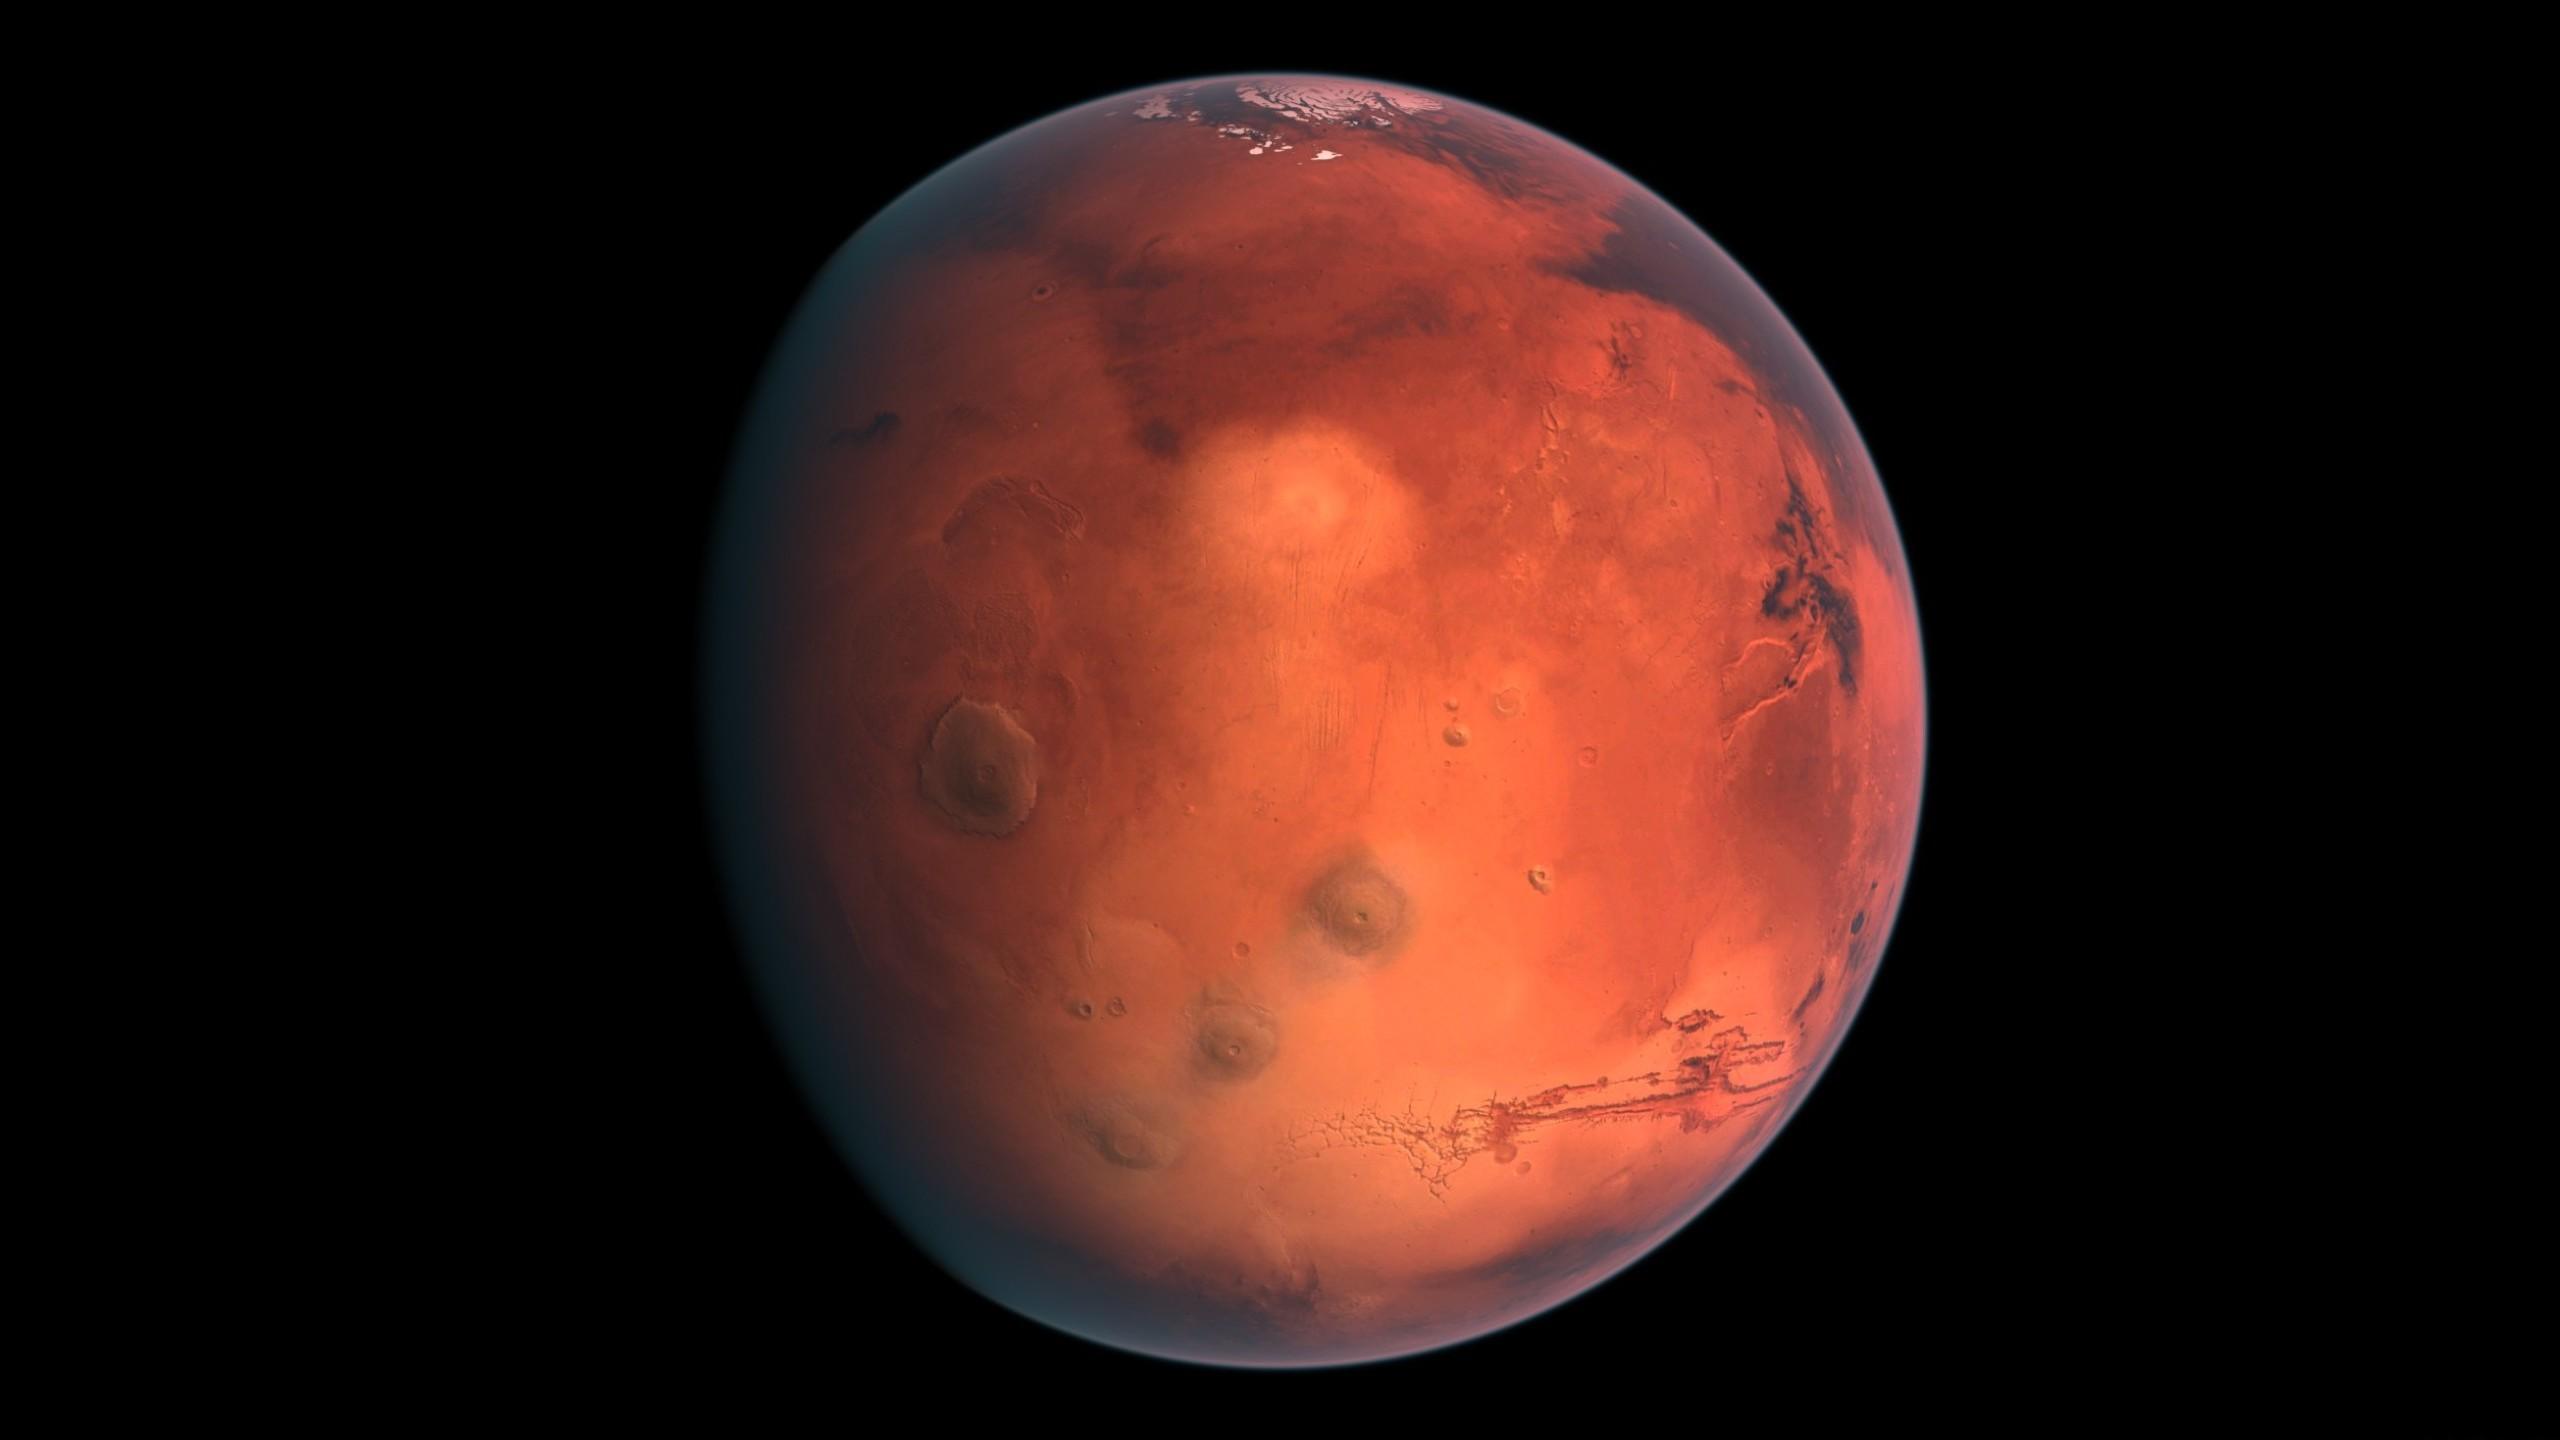 2560 x 1440 · jpeg - Mars HD Wallpaper | Background Image | 2560x1440 | ID:540071 ...